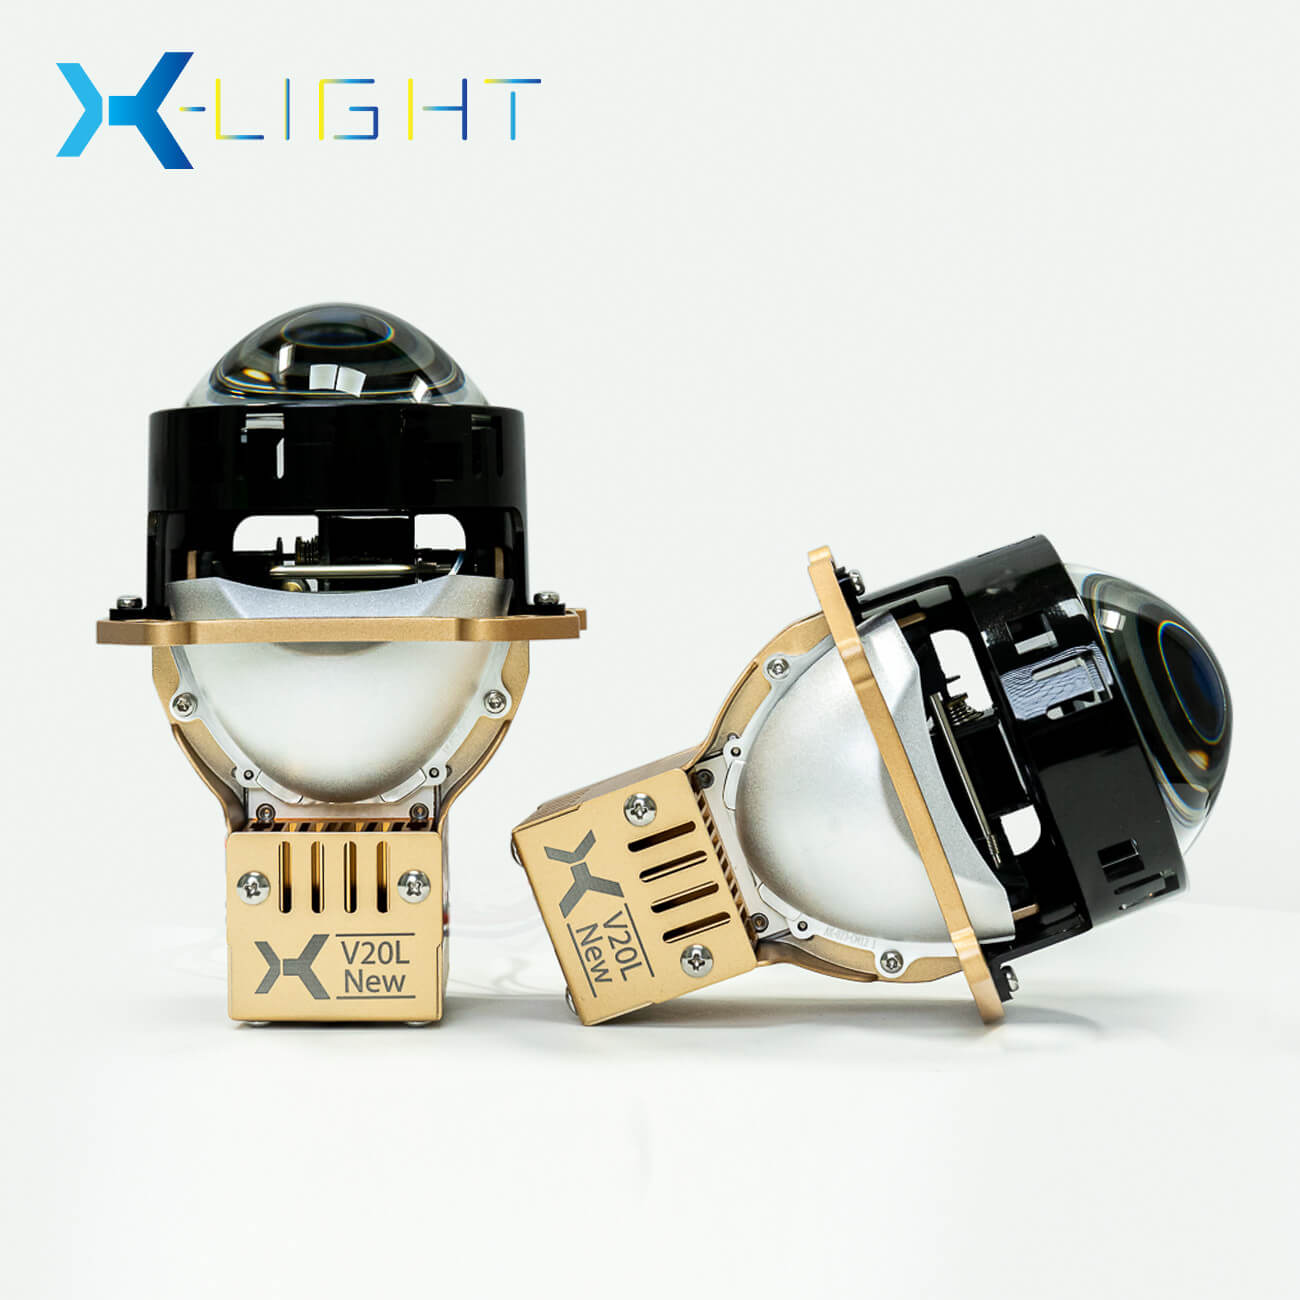 X-LIGHT V20L NEW